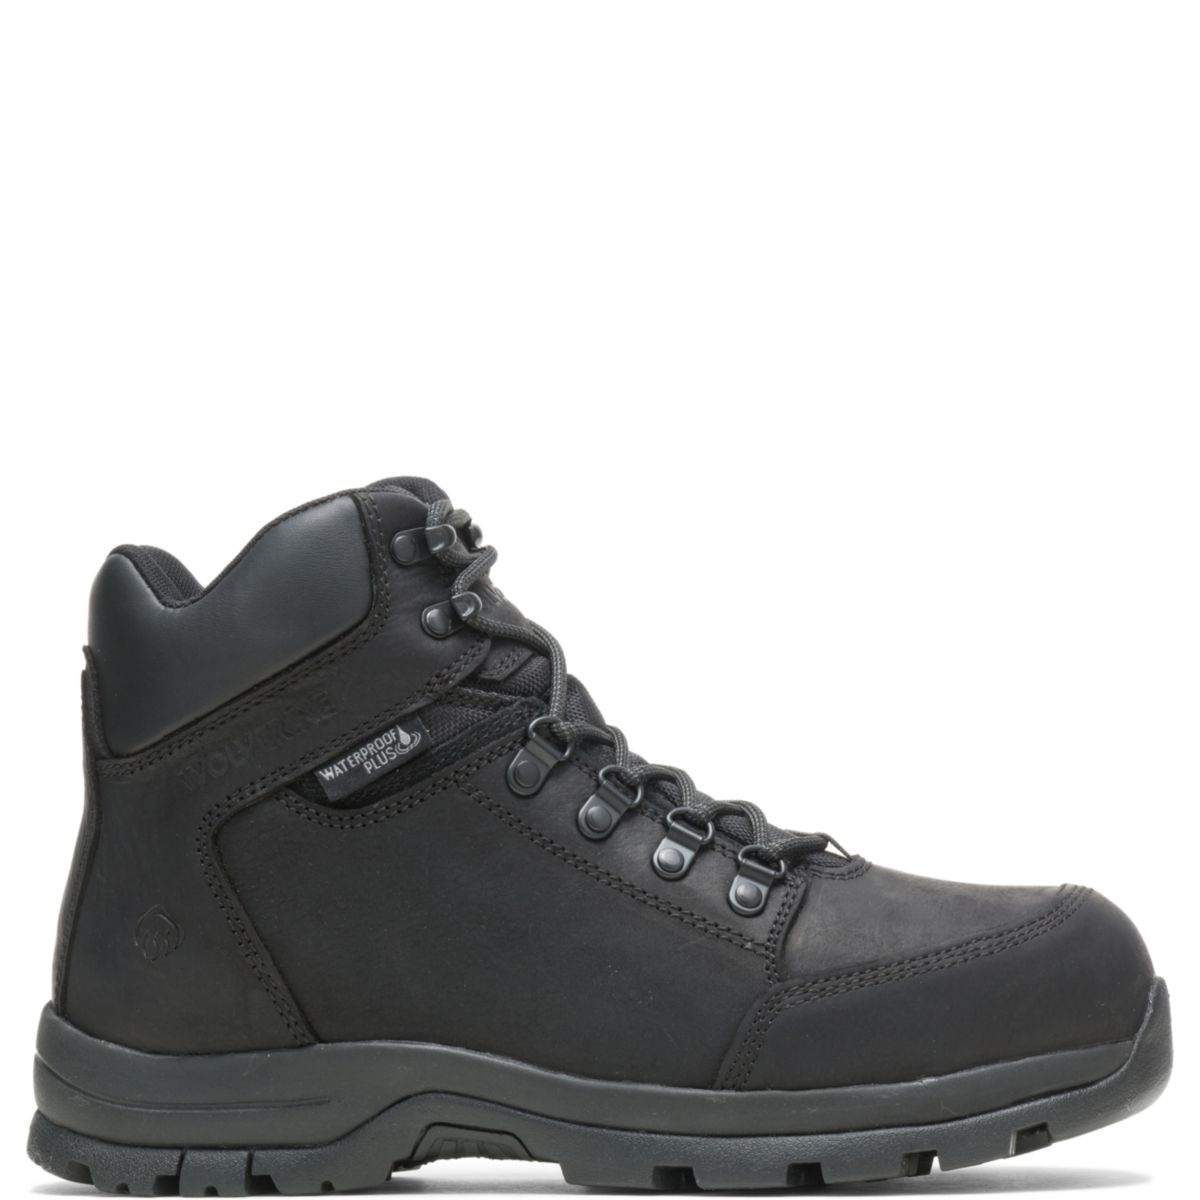 WOLVERINE Men's Grayson Steel Toe Waterproof Work Boot Black - W211042 BLACK - BLACK, 9.5